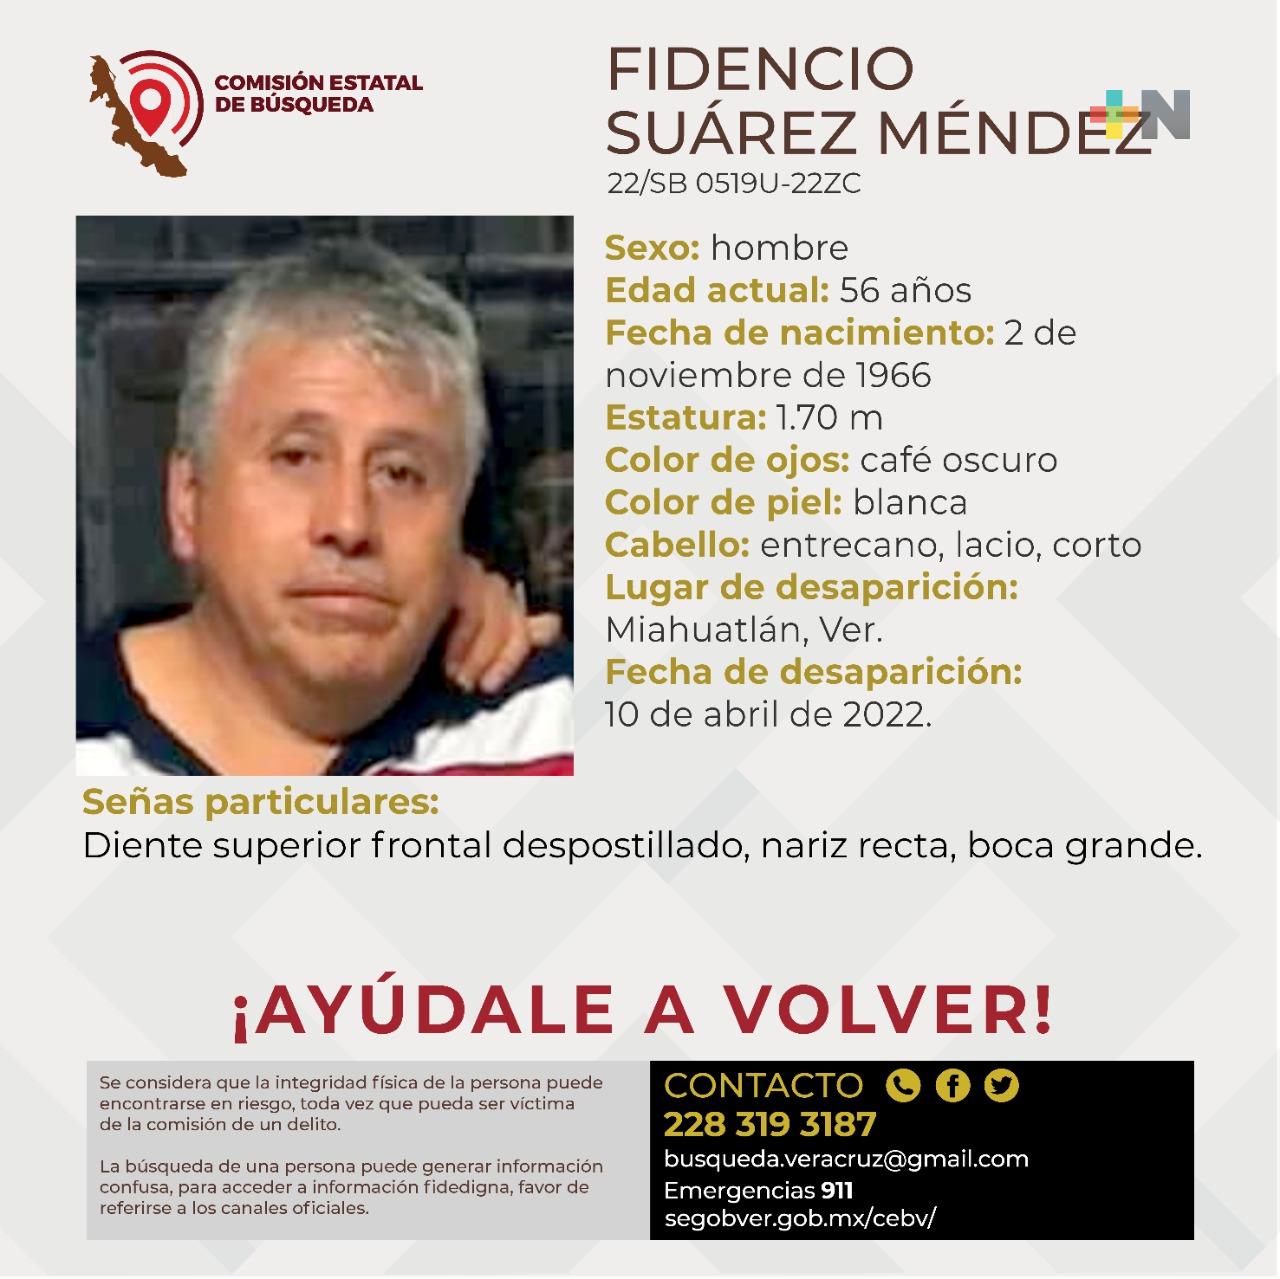 Se solicita colaboración para localizar a Fidencio Suárez Méndez